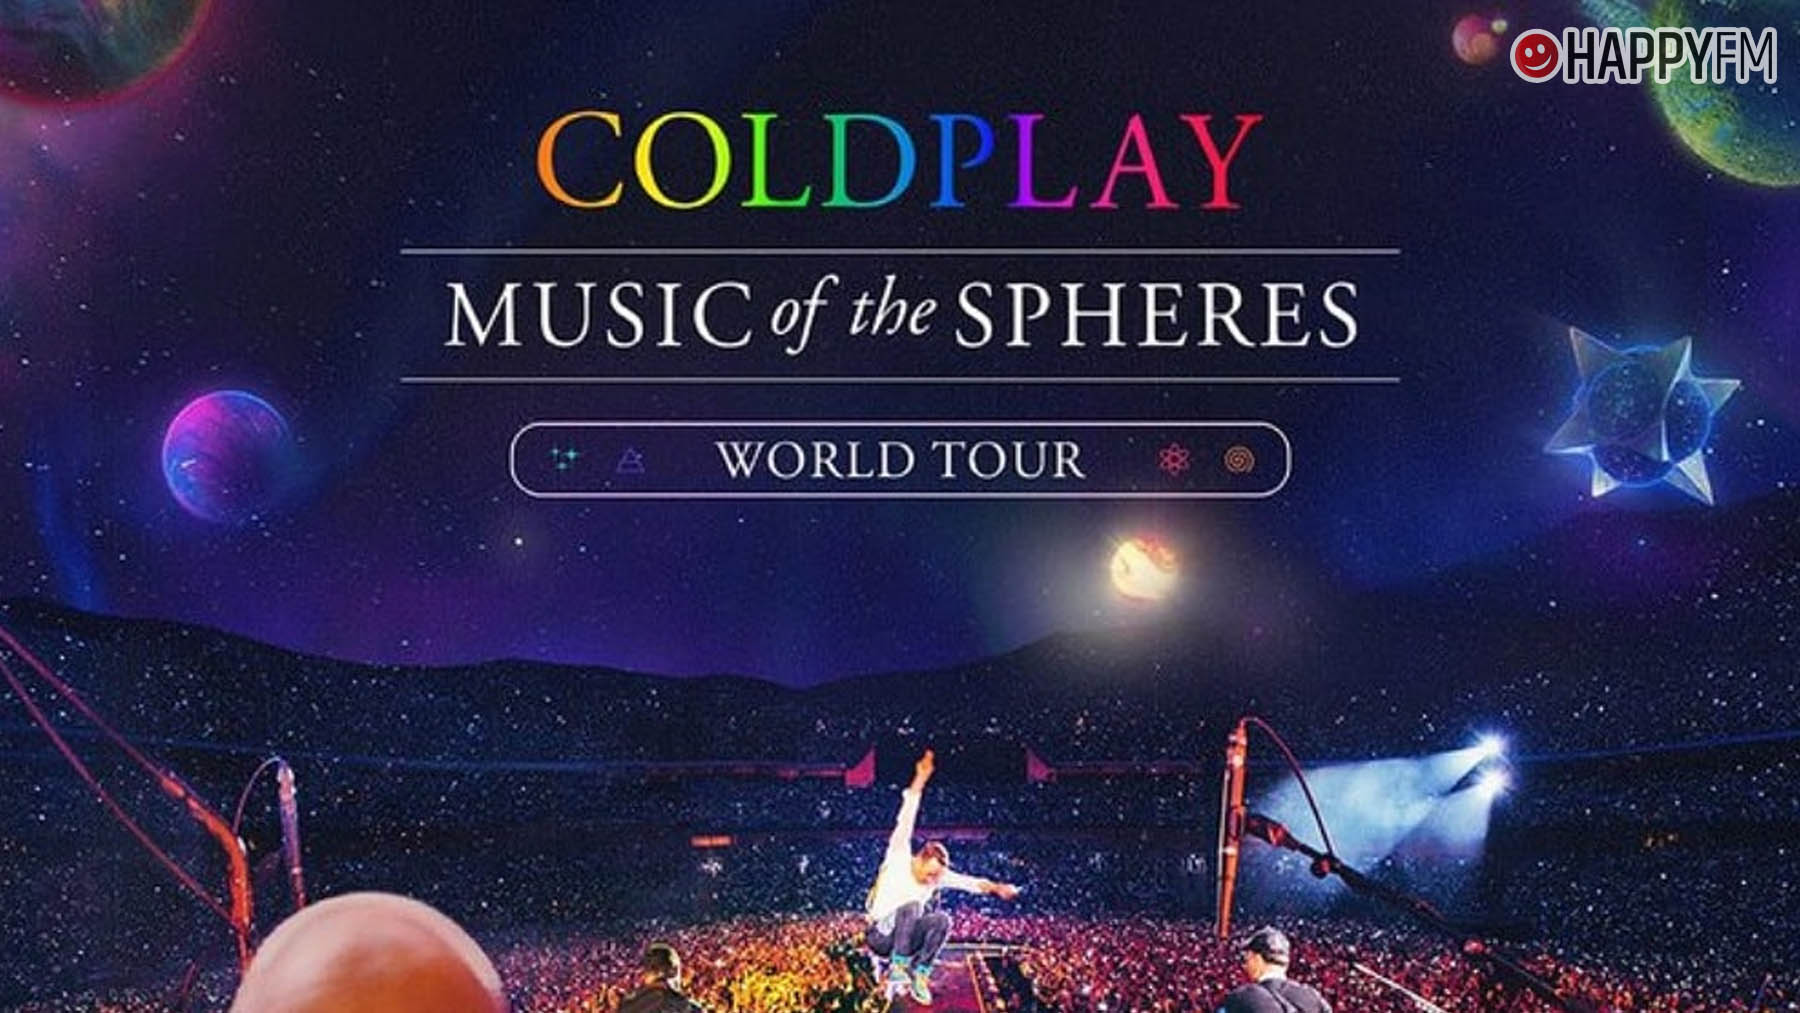 Coldplay amplía las fechas de su gira mundial con nuevos conciertos en